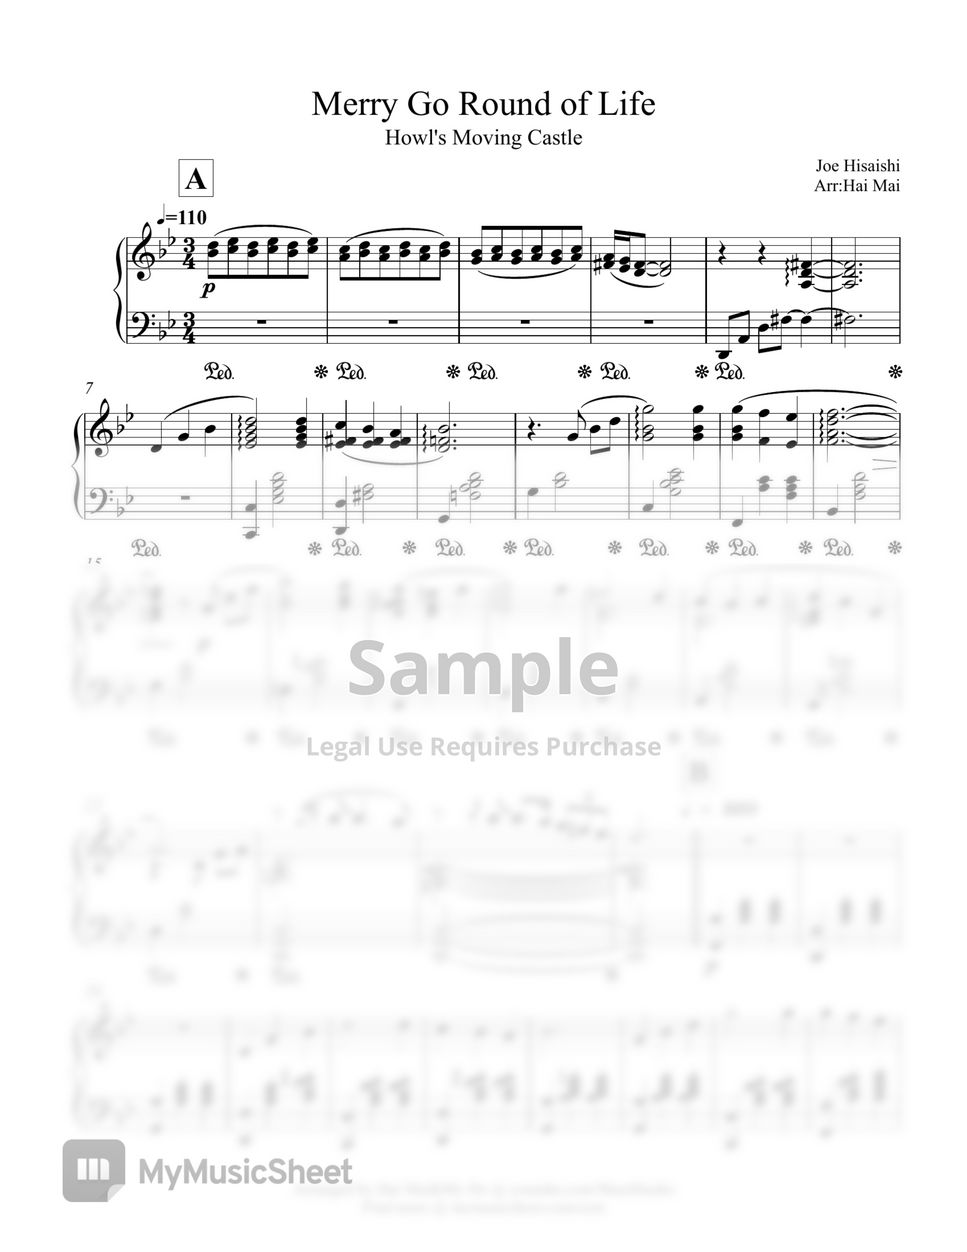 Joe Hisaishi - Merry Go Round of Life for Piano solo by Hai Mai